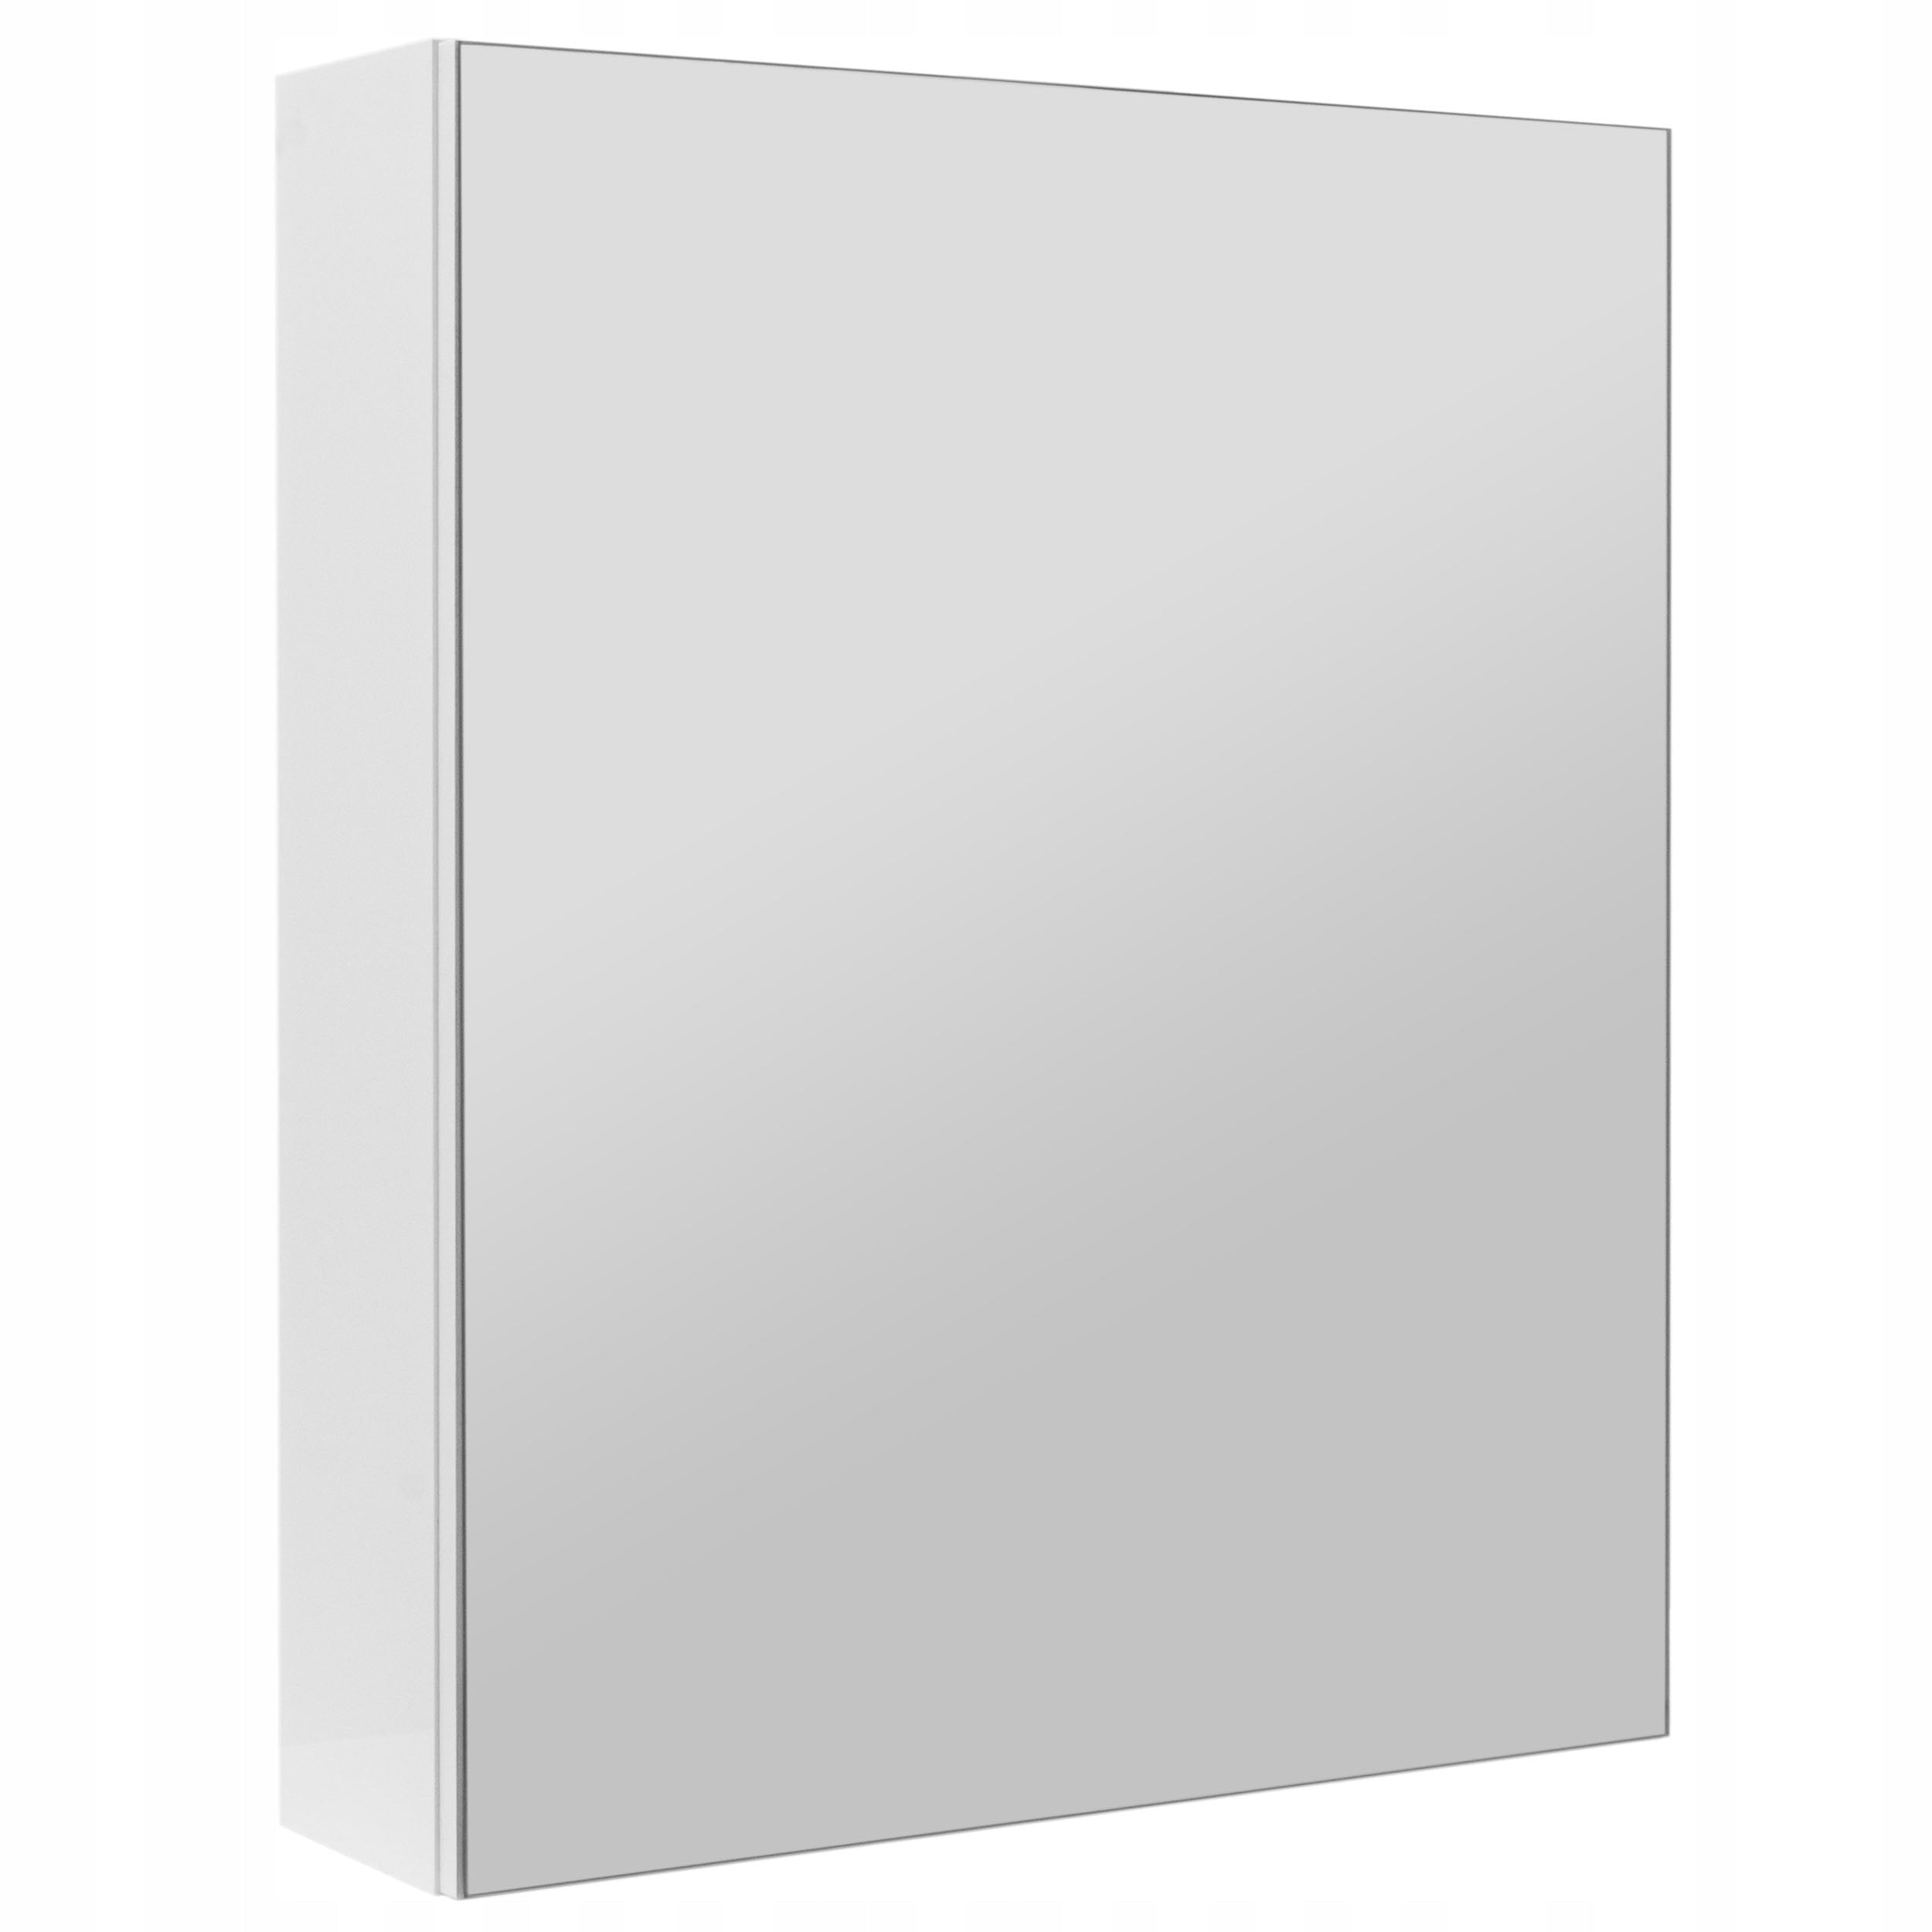 Badromsskap med speil, vegghengt, hvit høyglans, 50 cm